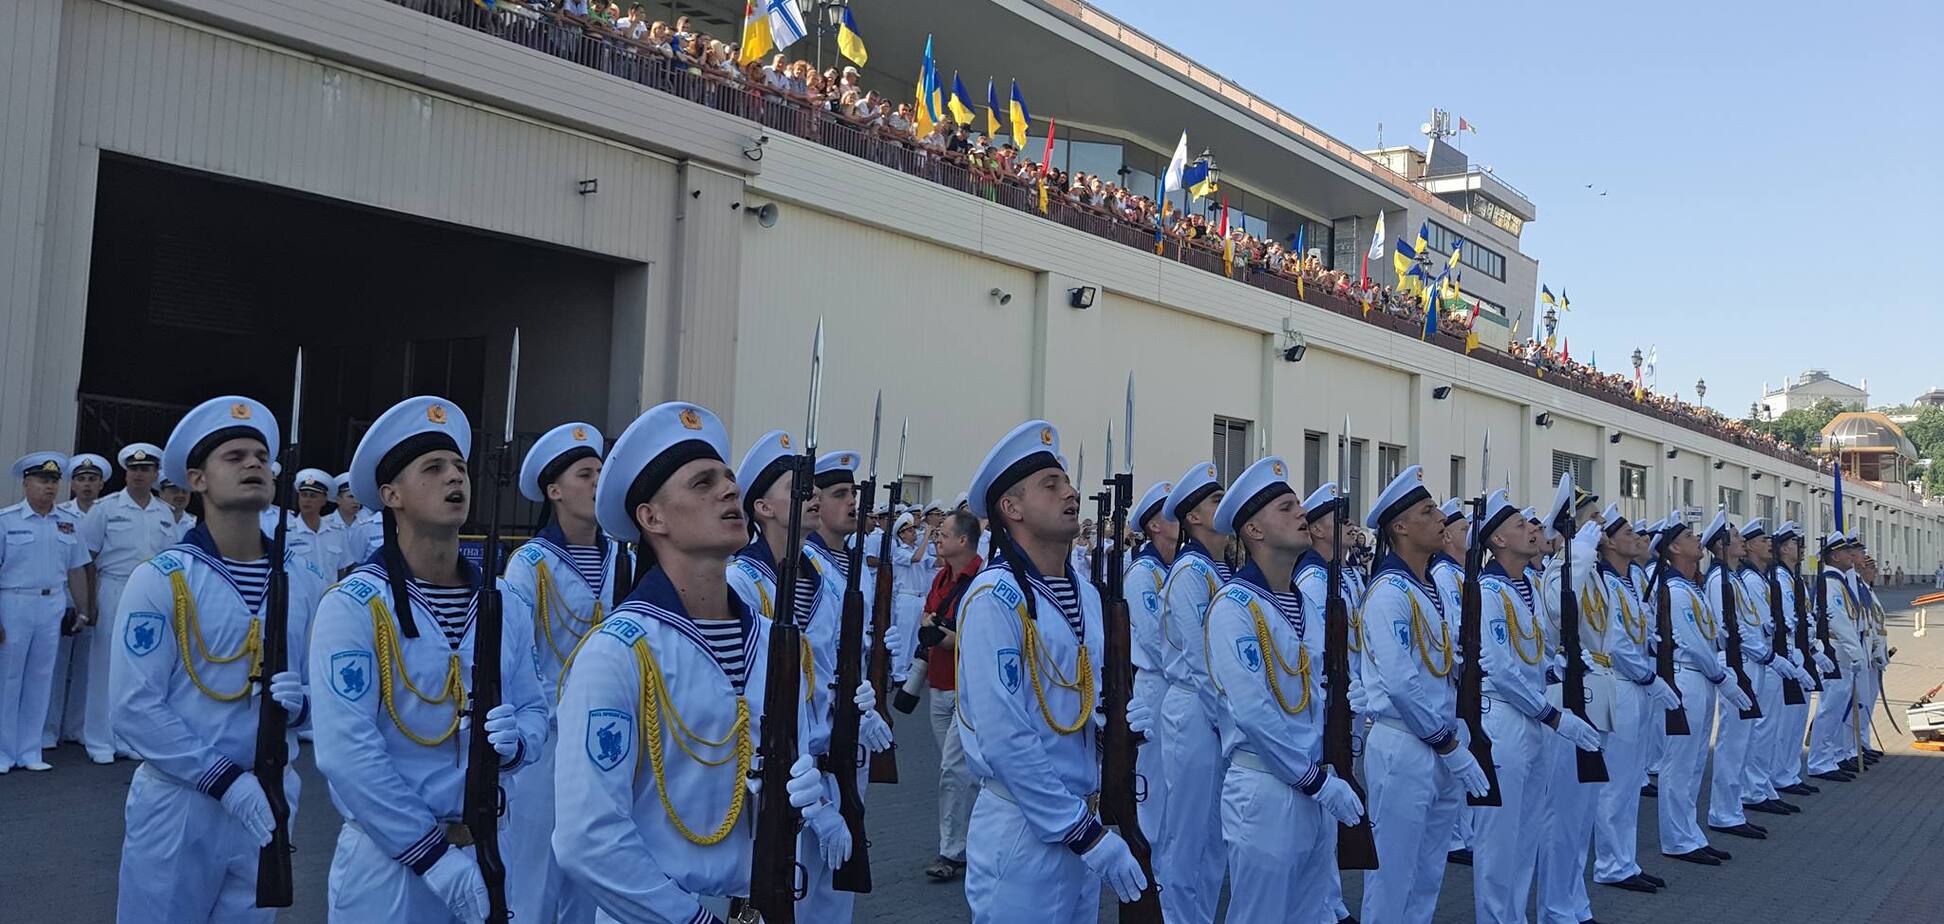 День Військово-морських сил України 2020 року відзначається 5 липня